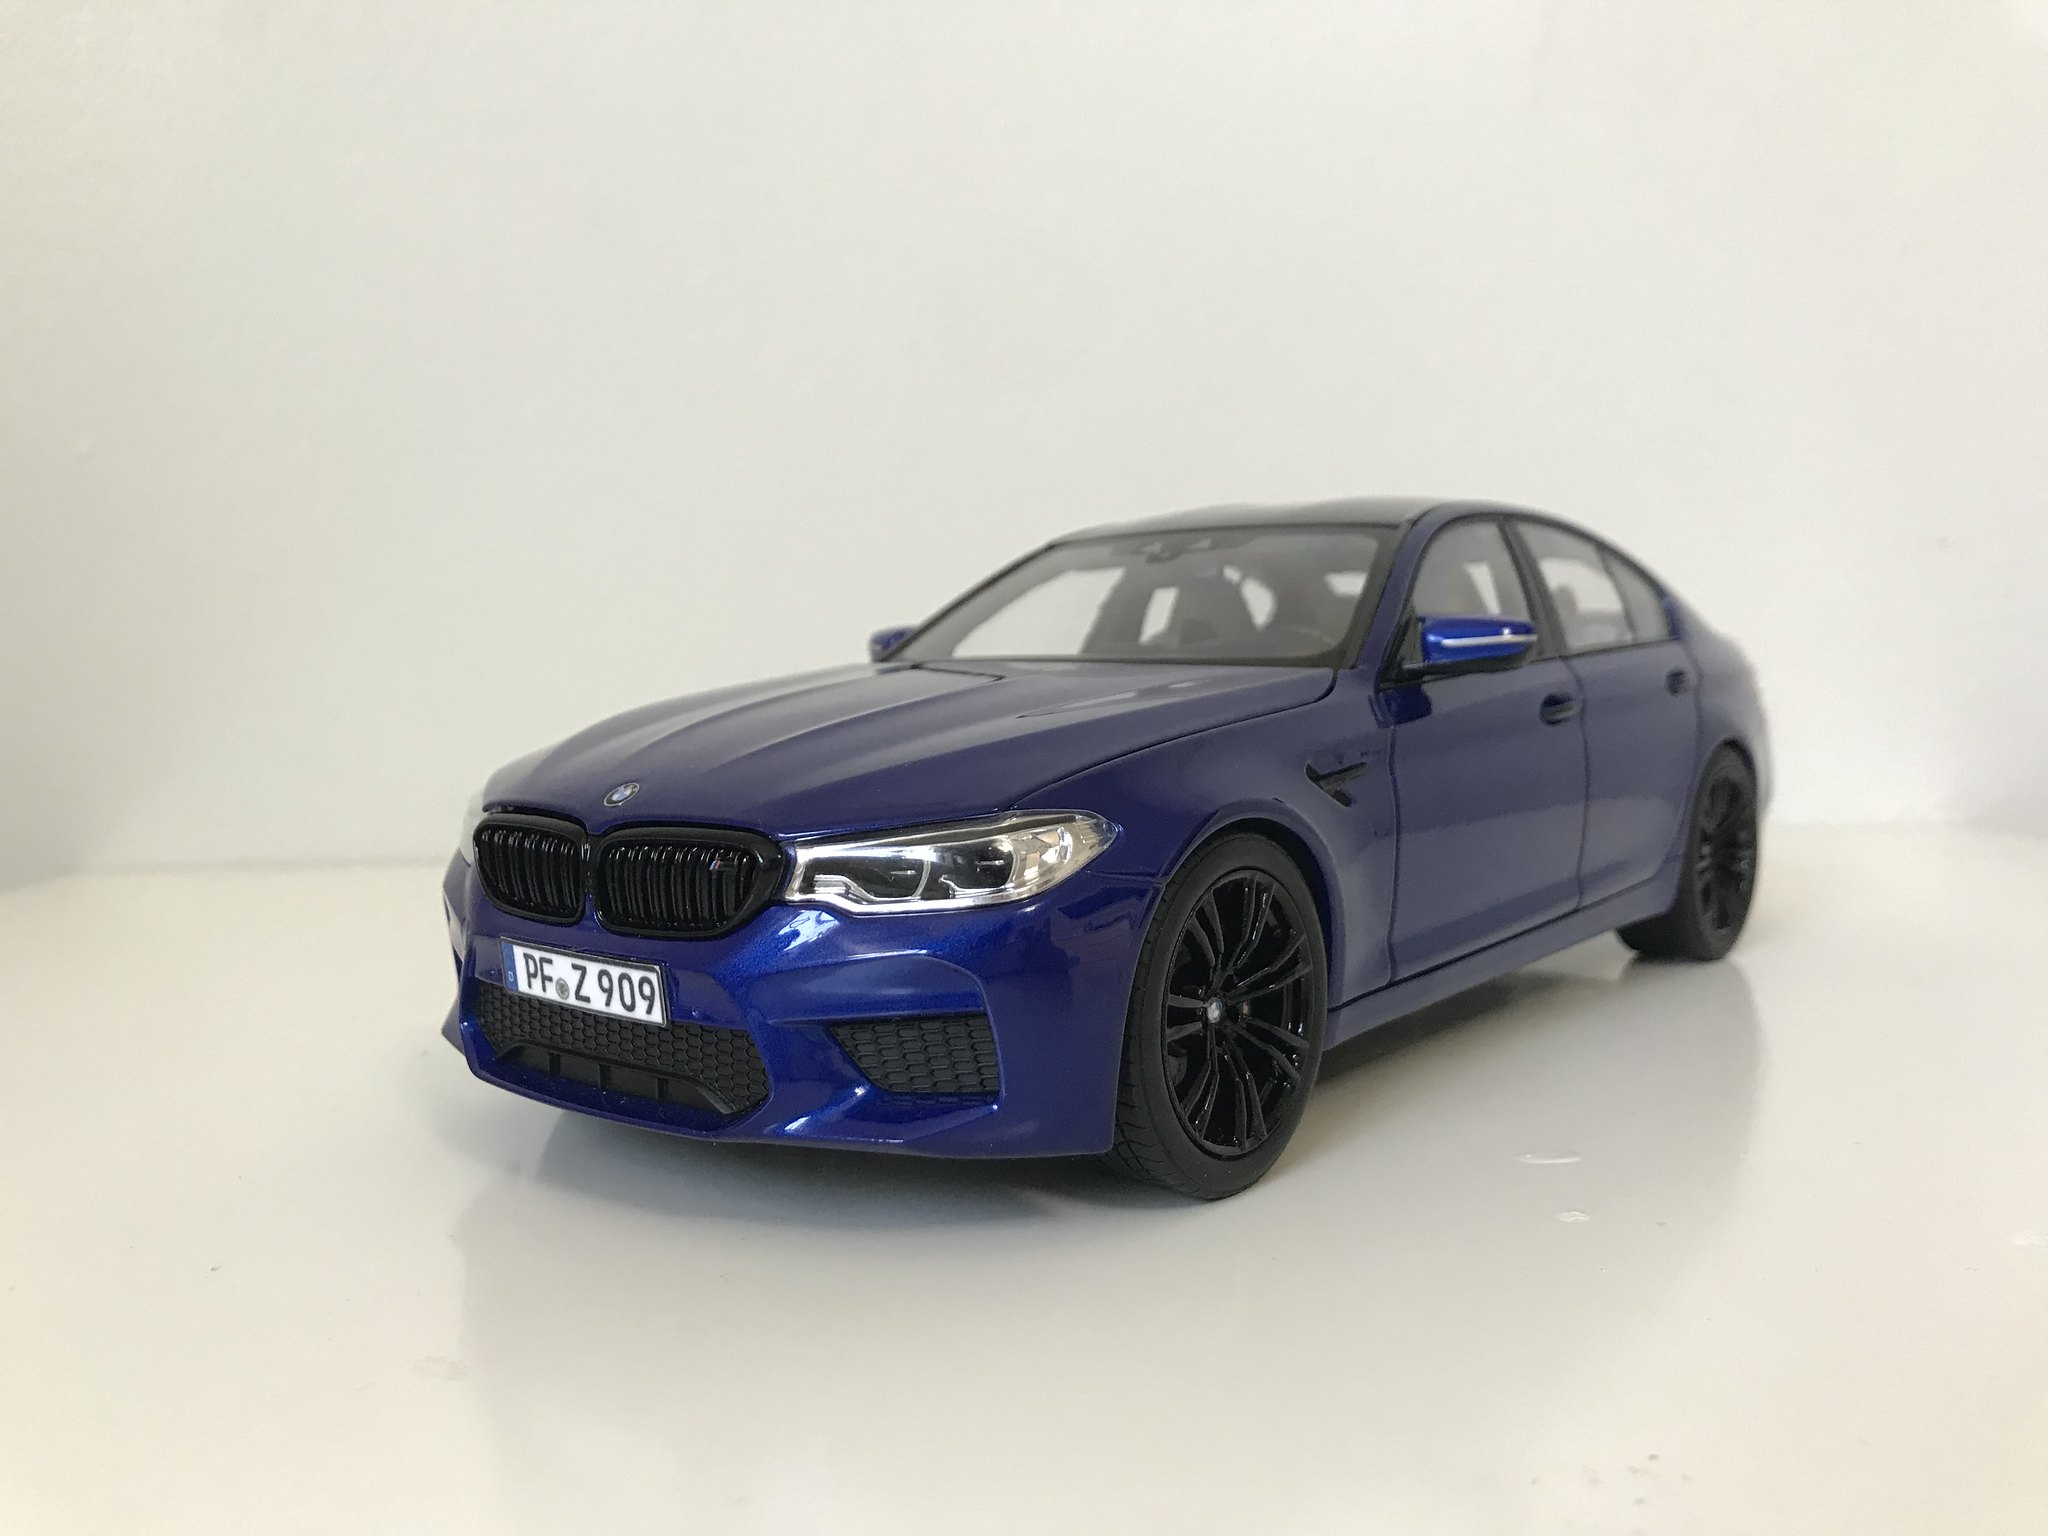 1:18 BMW M5 F90 Marina Bay Blue (by Norev) | DiecastXchange Forum